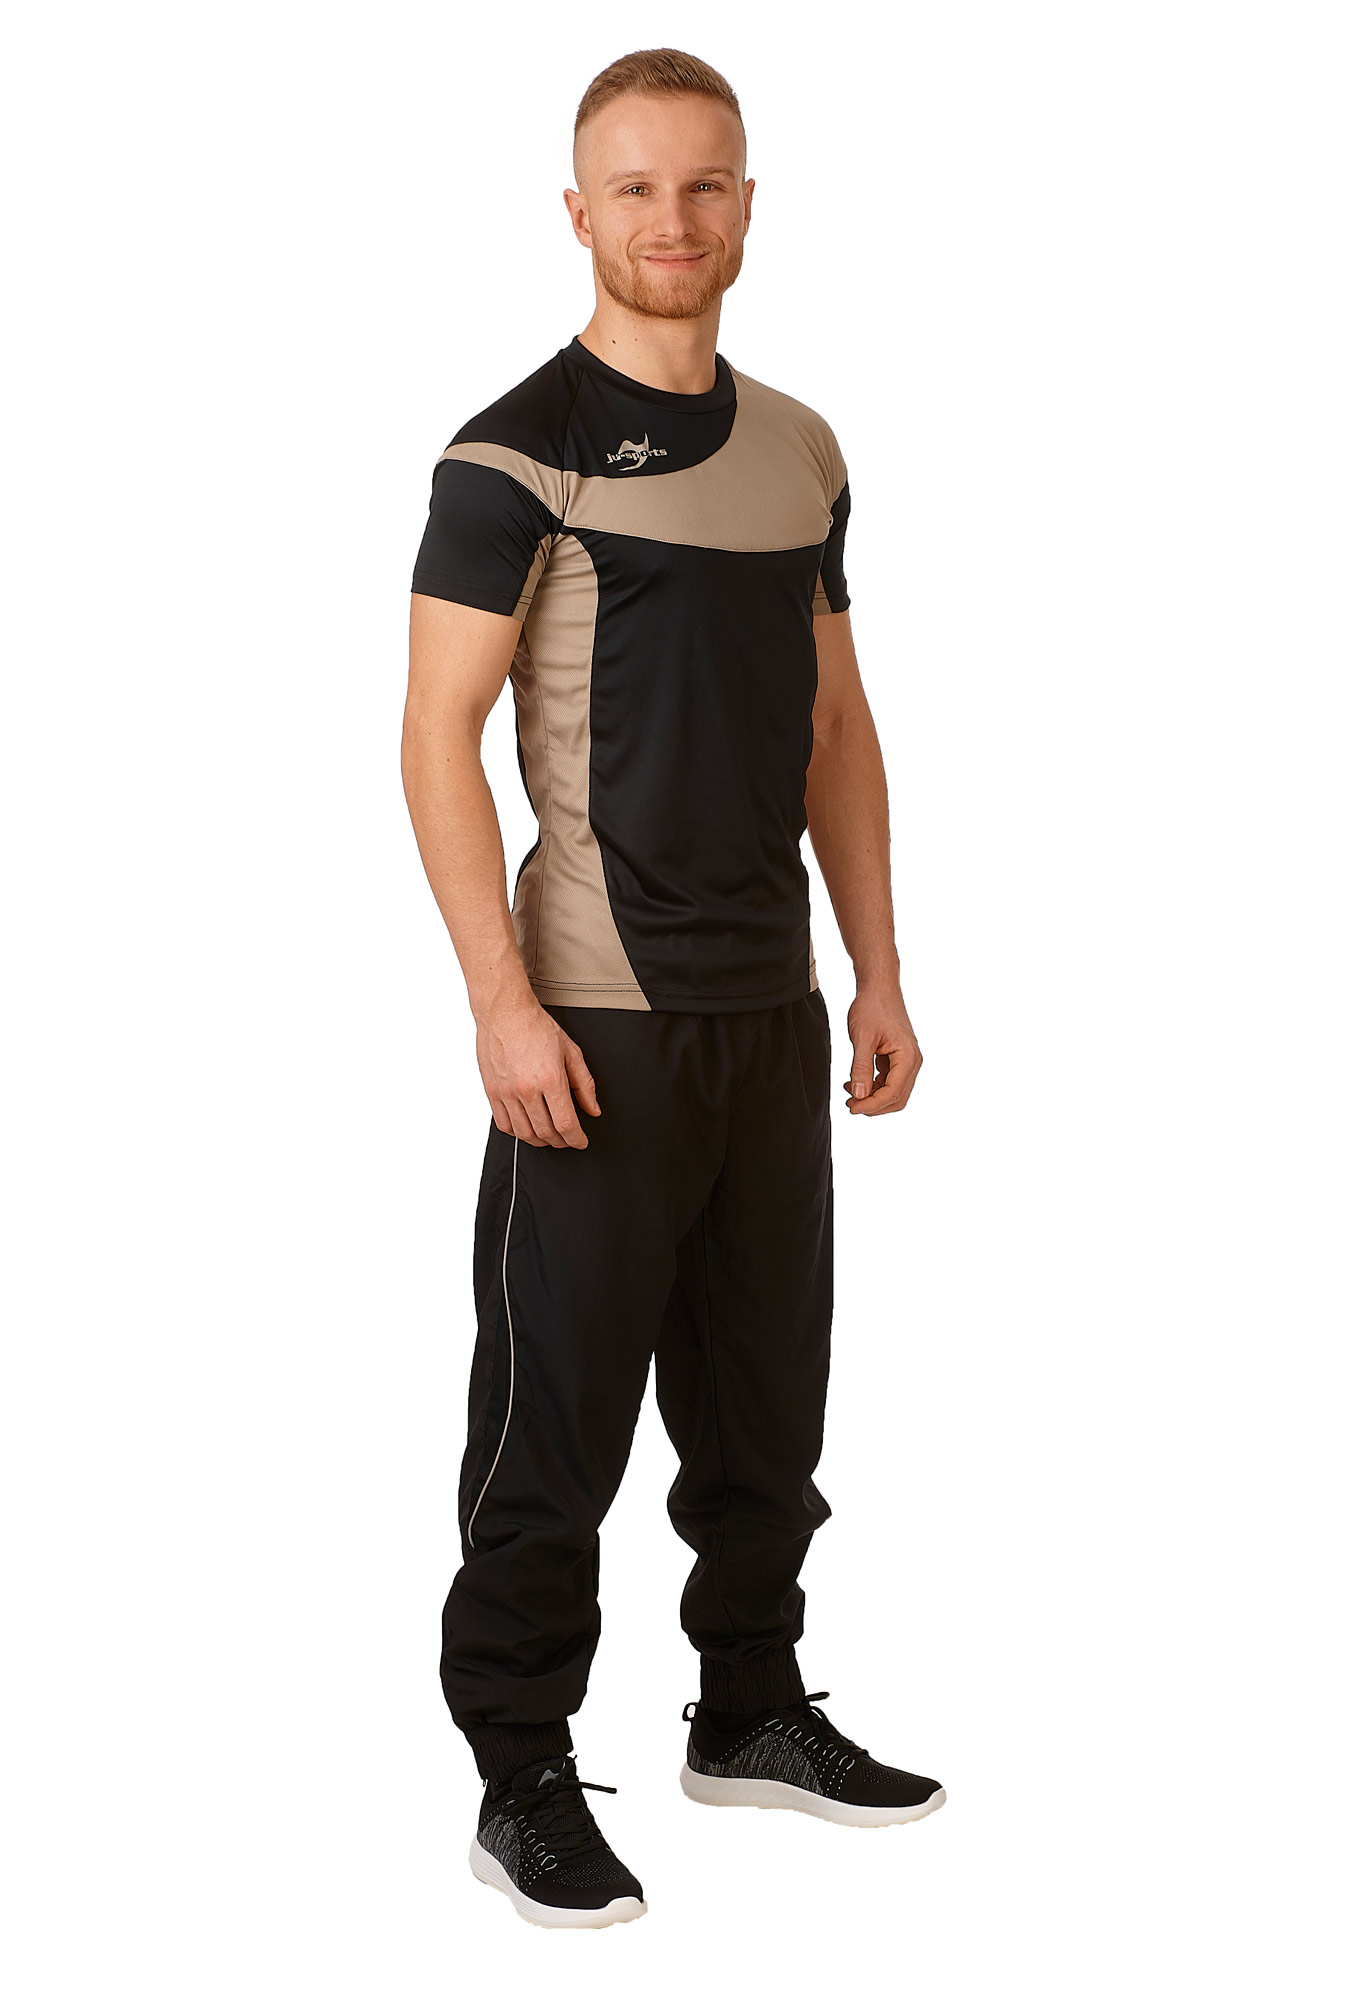 Teamwear Element C1 Shirt schwarz